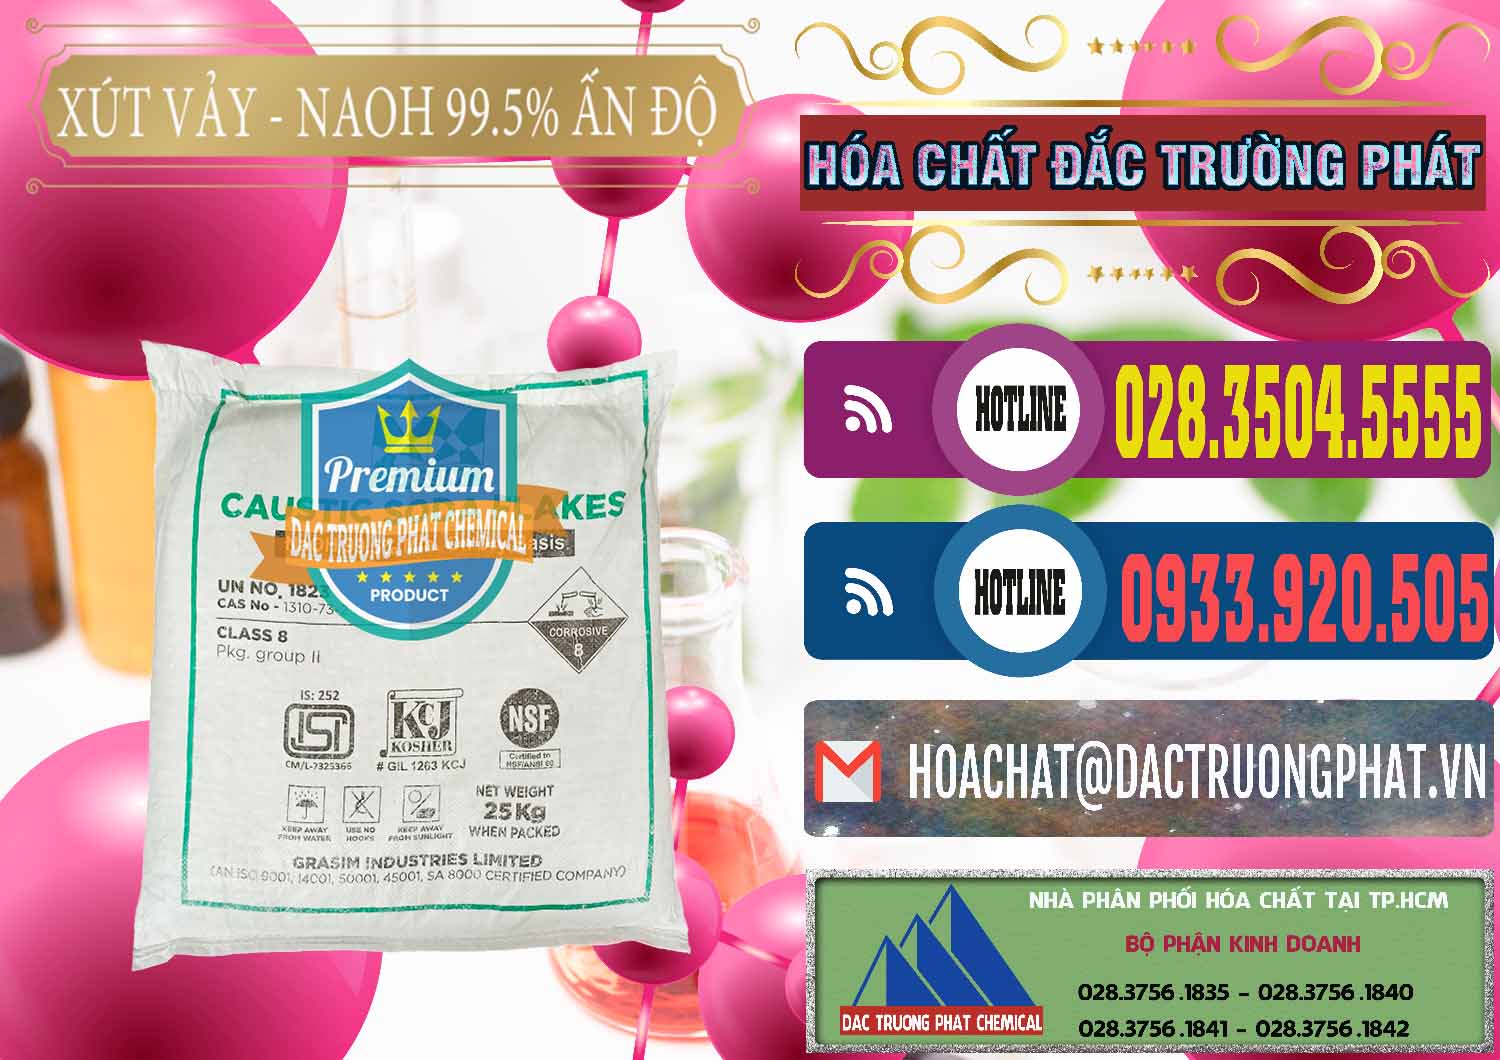 Cty chuyên bán & cung ứng Xút Vảy - NaOH Vảy 99.5% Aditya Birla Grasim Ấn Độ India - 0170 - Phân phối - nhập khẩu hóa chất tại TP.HCM - muabanhoachat.com.vn